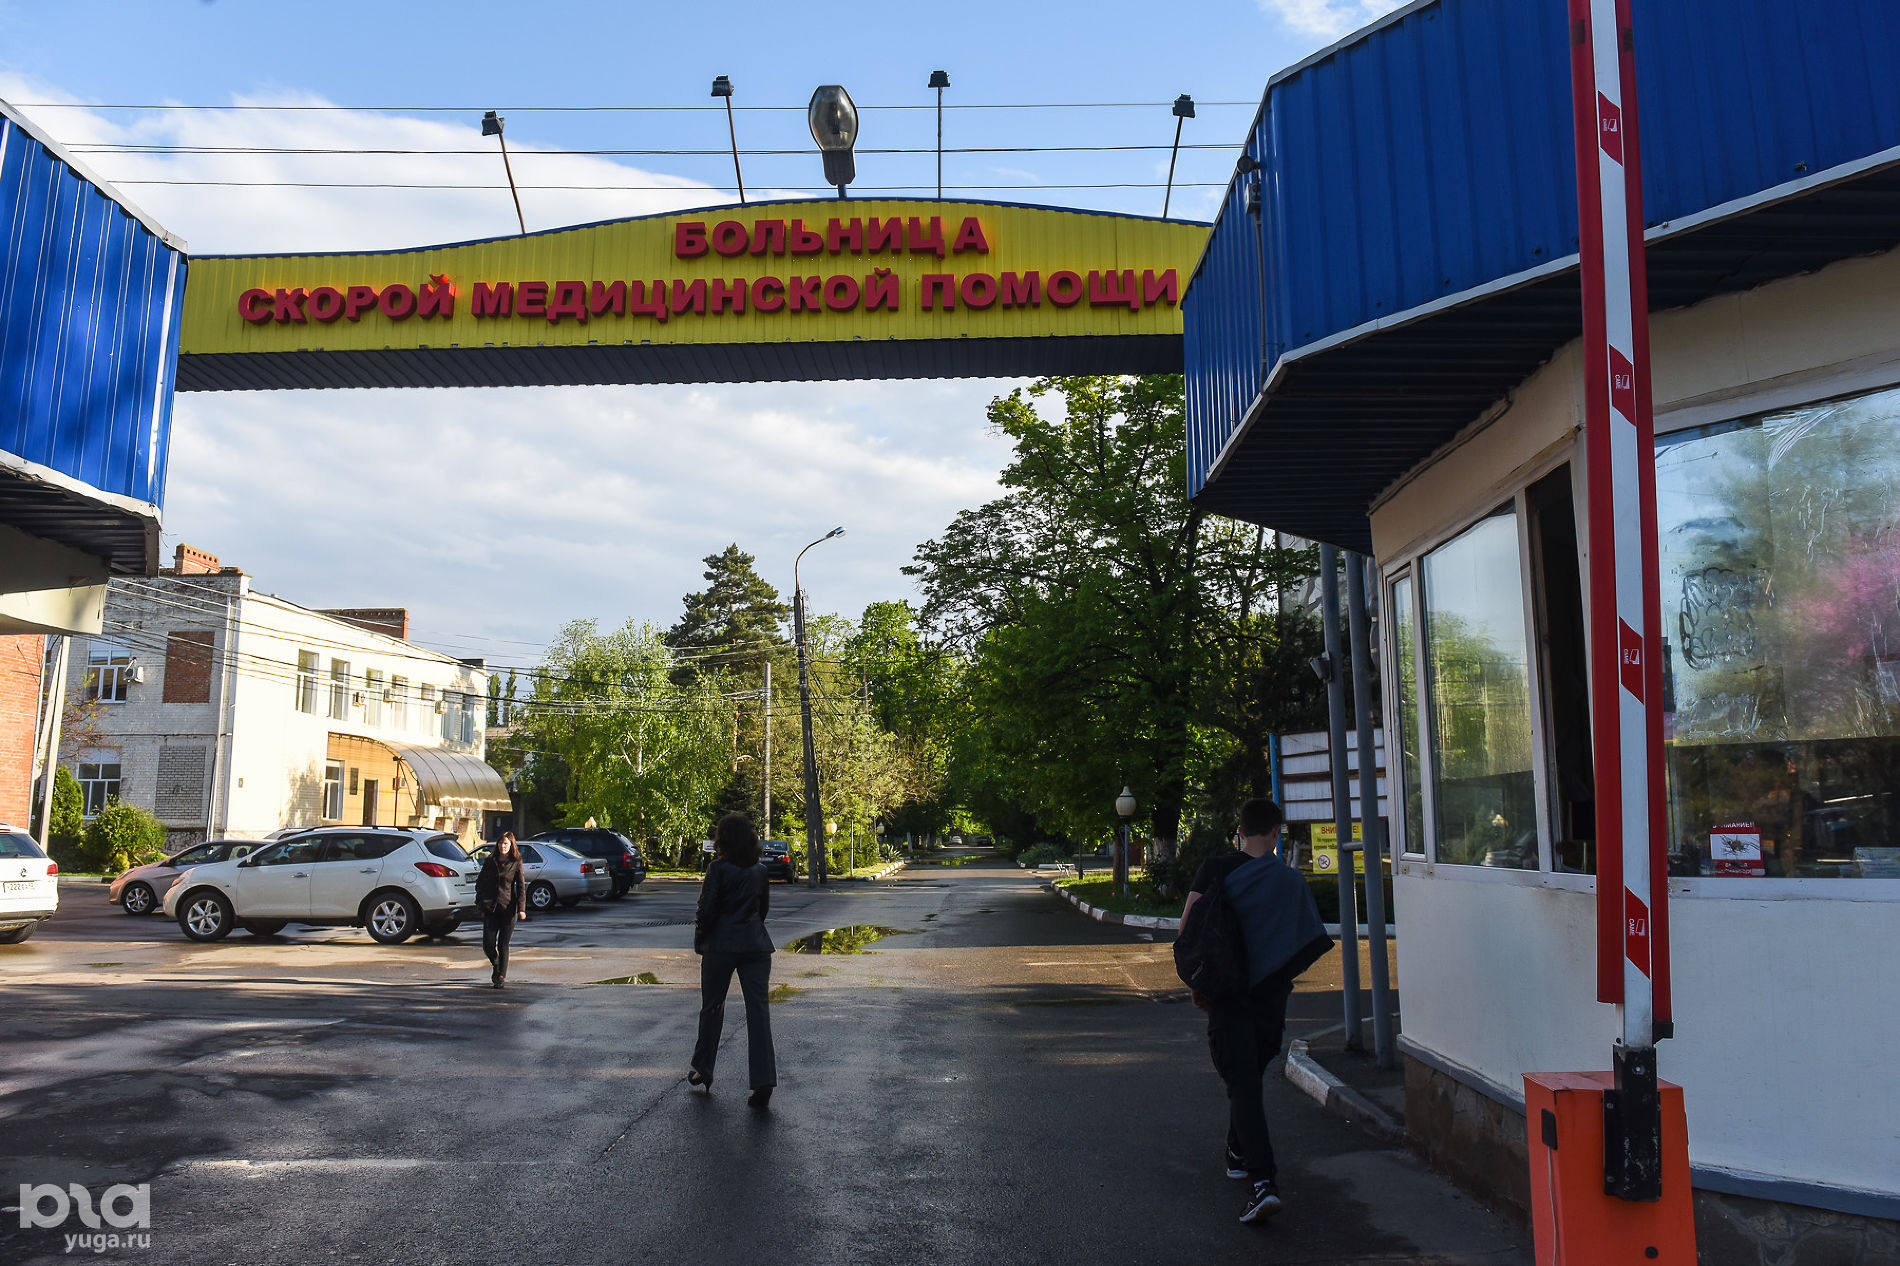 Краснодарская БСМП © Фото Елены Синеок, Юга.ру